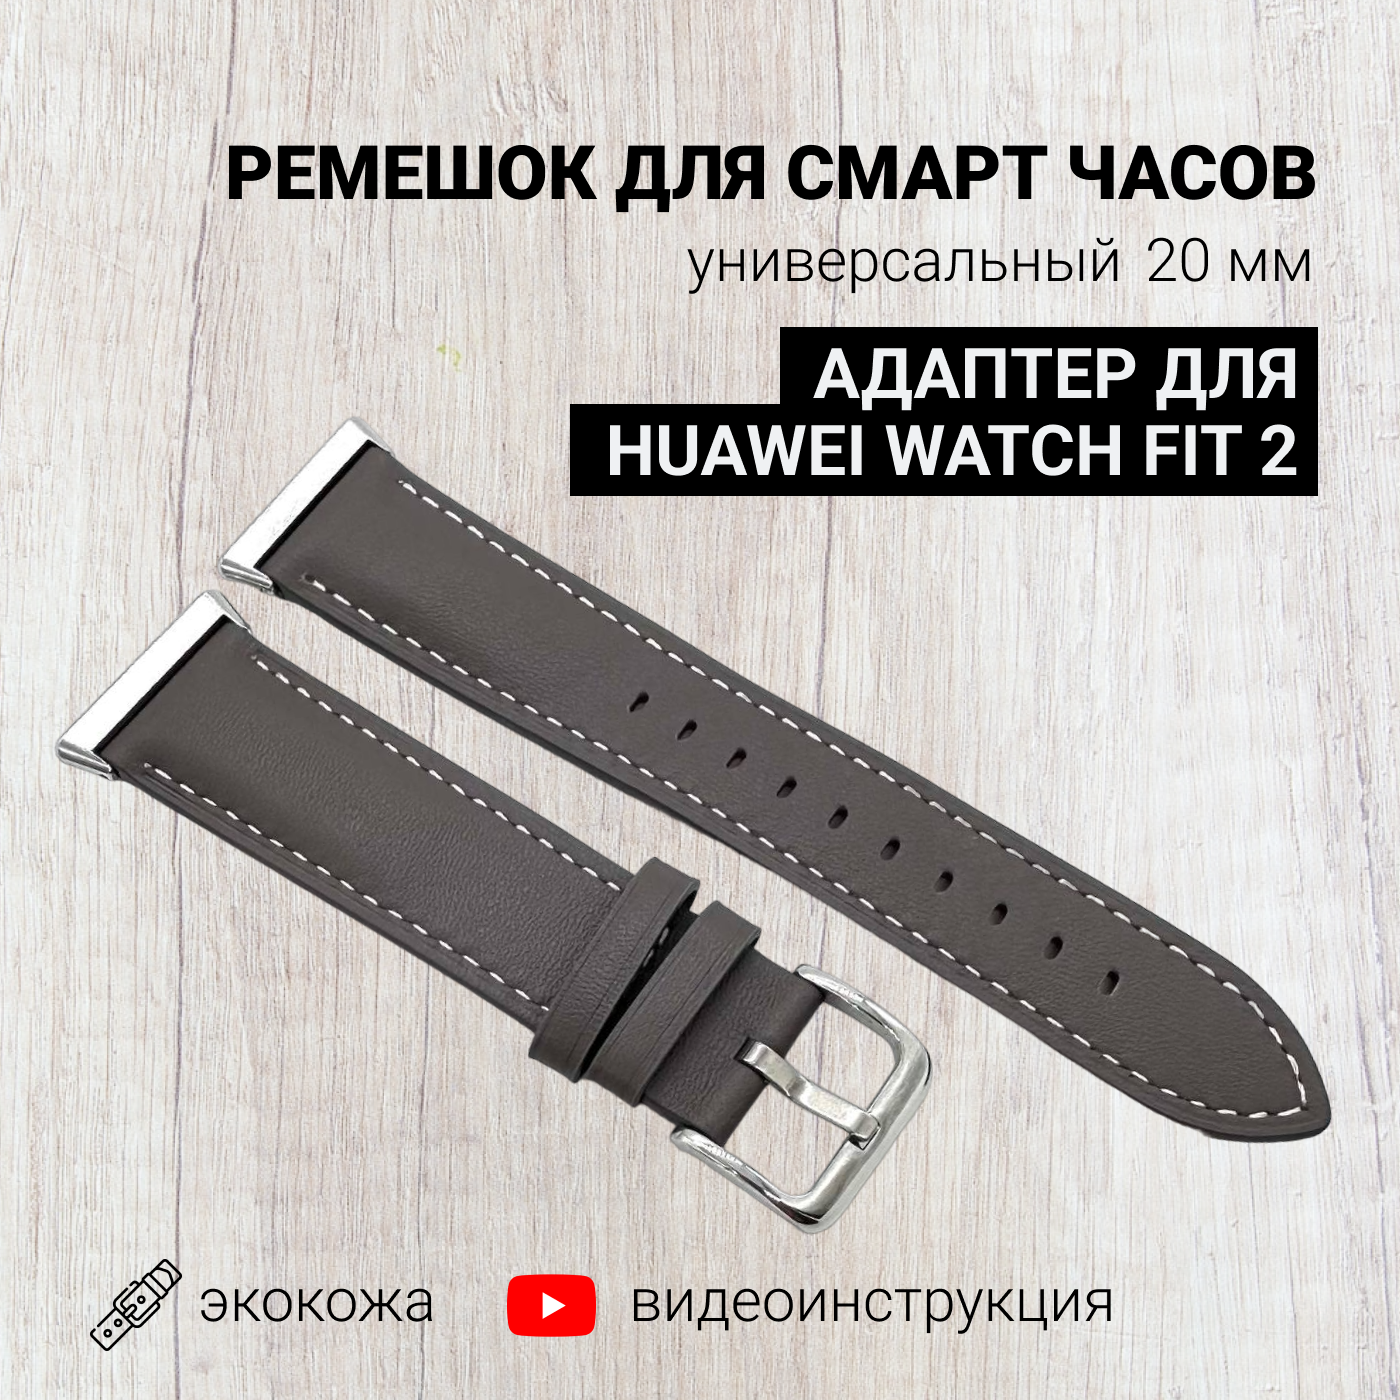 Ремешок для смарт часов 20мм экокожа с адаптером для Huawei Watch Fit 2, экокожа, серый, кожаный браслет для умных часов